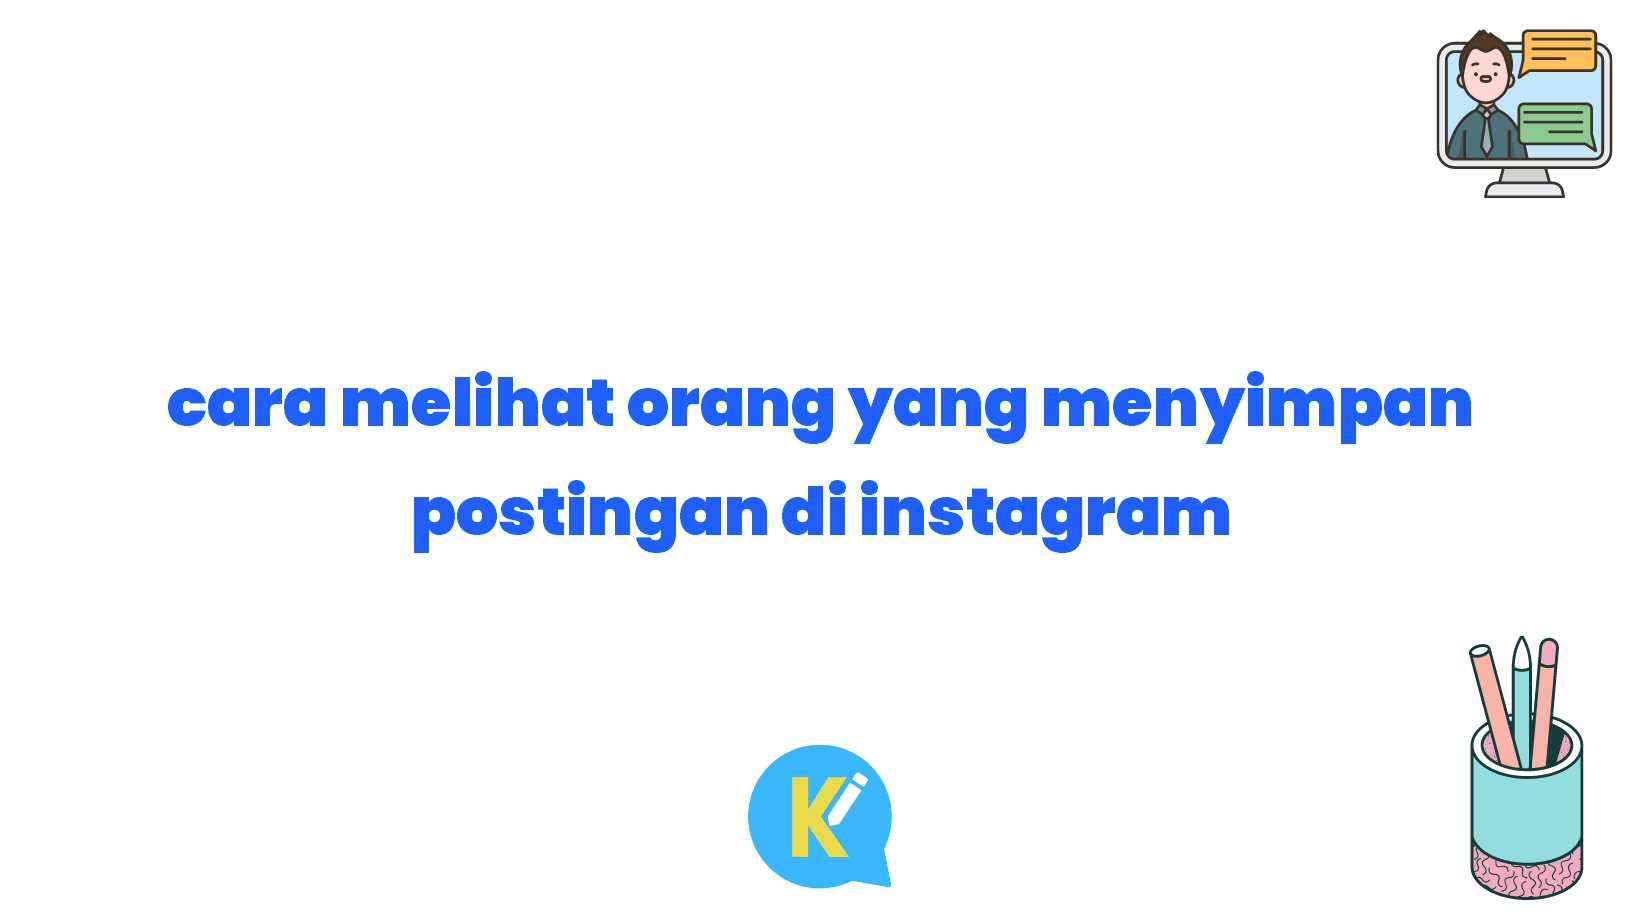 cara melihat orang yang menyimpan postingan di instagram